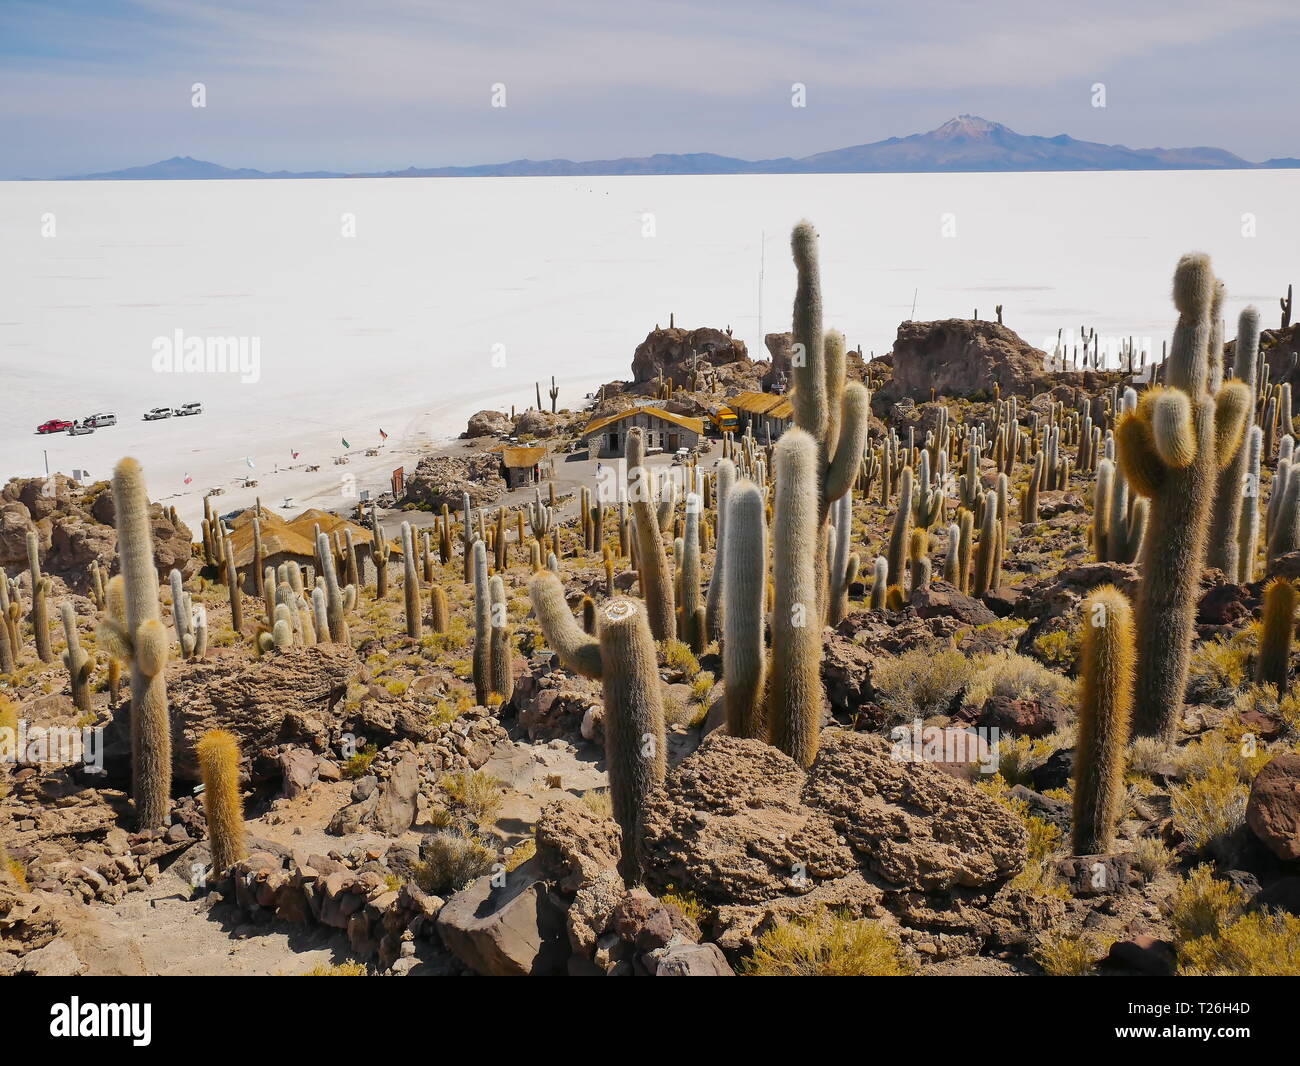 L'incroyable de sel de Salar de Uyuni, sur l'altiplano andin de la Bolivie, de l'Amérique du Sud, vus de l'Isla Incahuasi, une île émergeant de t Banque D'Images